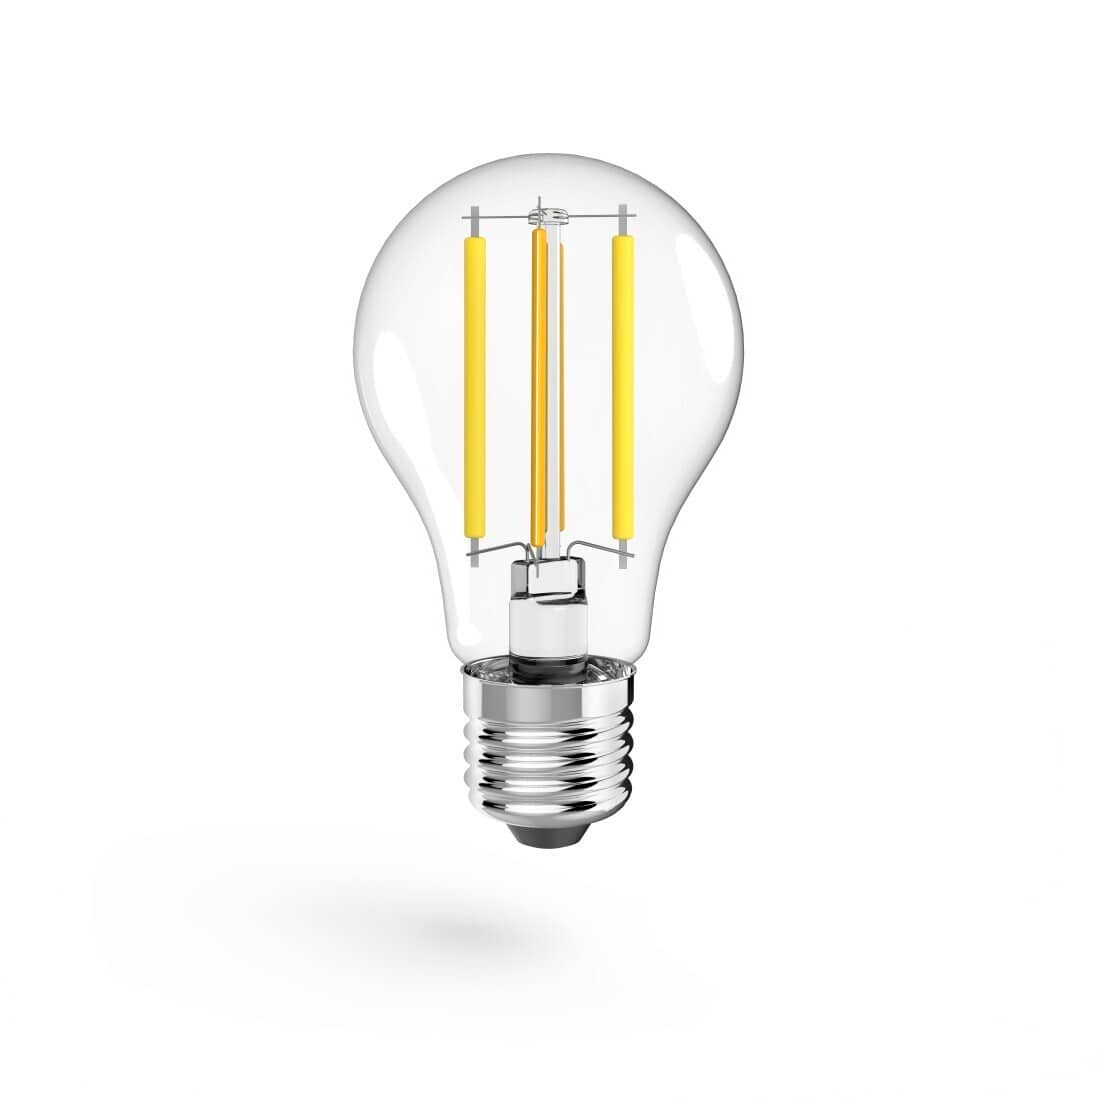 für Retro WLAN-LED-Lampe HAMA dimmbar E27 Sprach-/App-Steuerung 7W